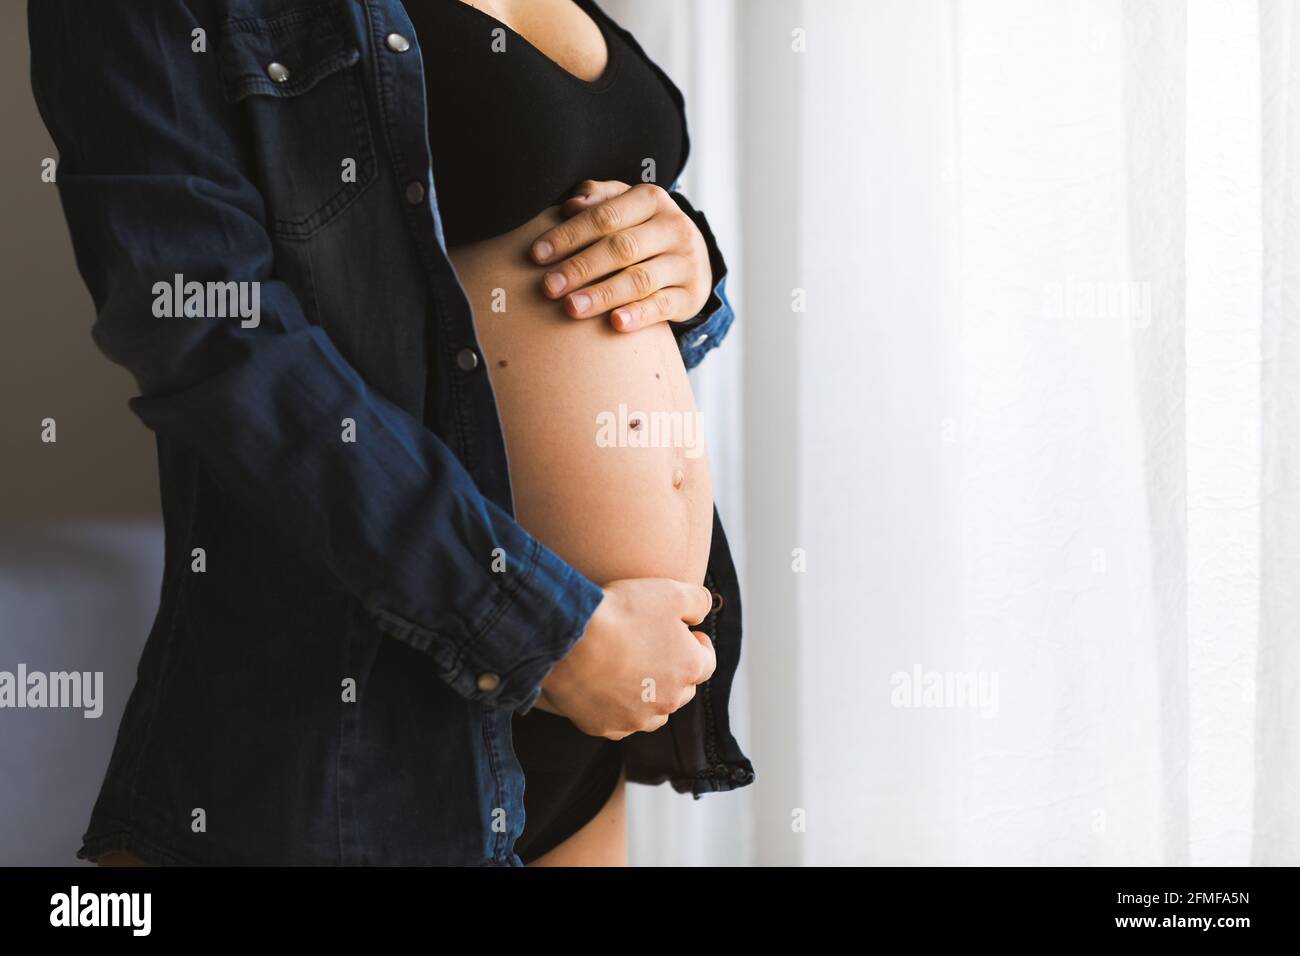 Eine Schwangerin berührt ihren Bauch in der Nähe der Fenster. Schwangerschaft und Mutterschaft Konzept. Stockfoto